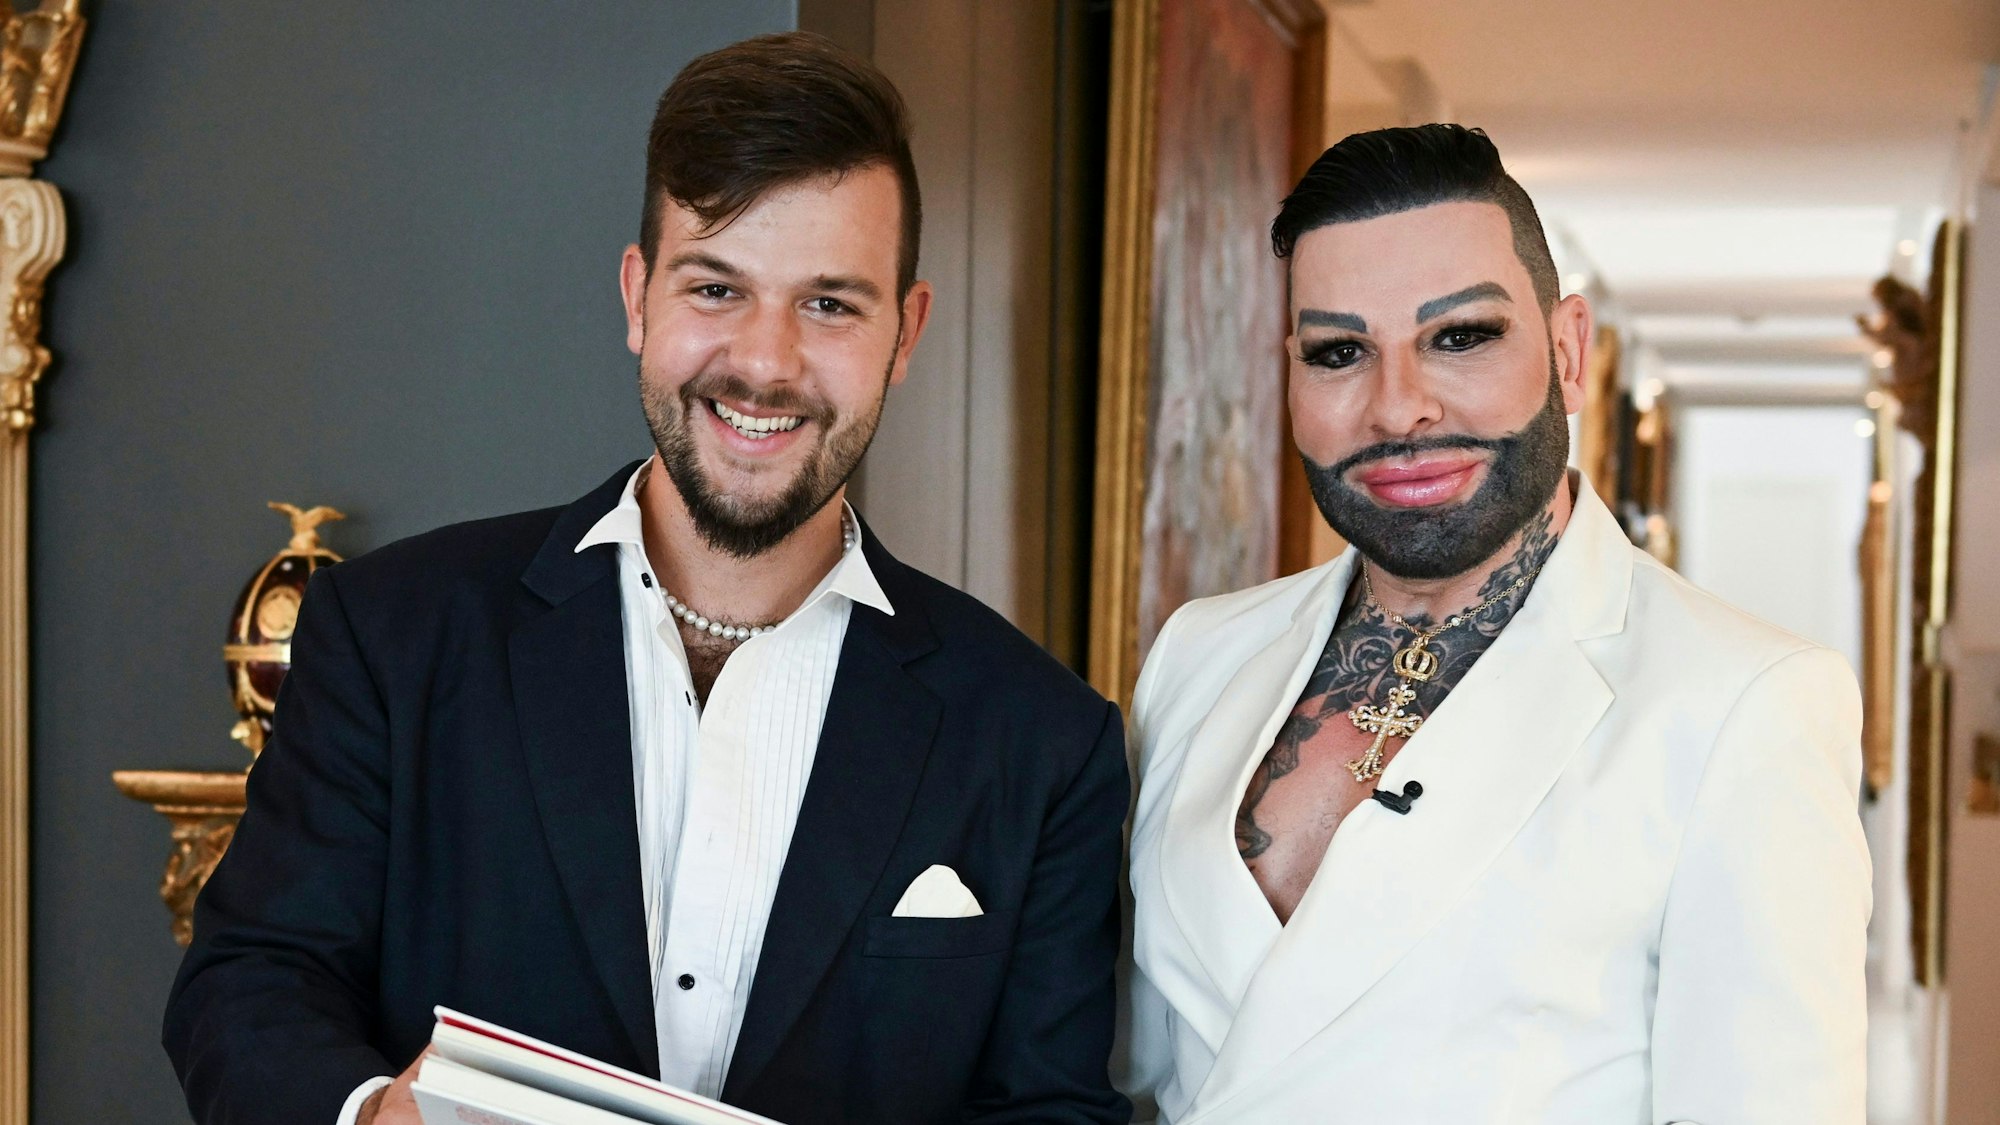 Der Modedesigner Harald Glööckler und sein neuer Partner Marc-Eric Lehmann zeigen sich gemeinsam in der Wohnung des Designers.